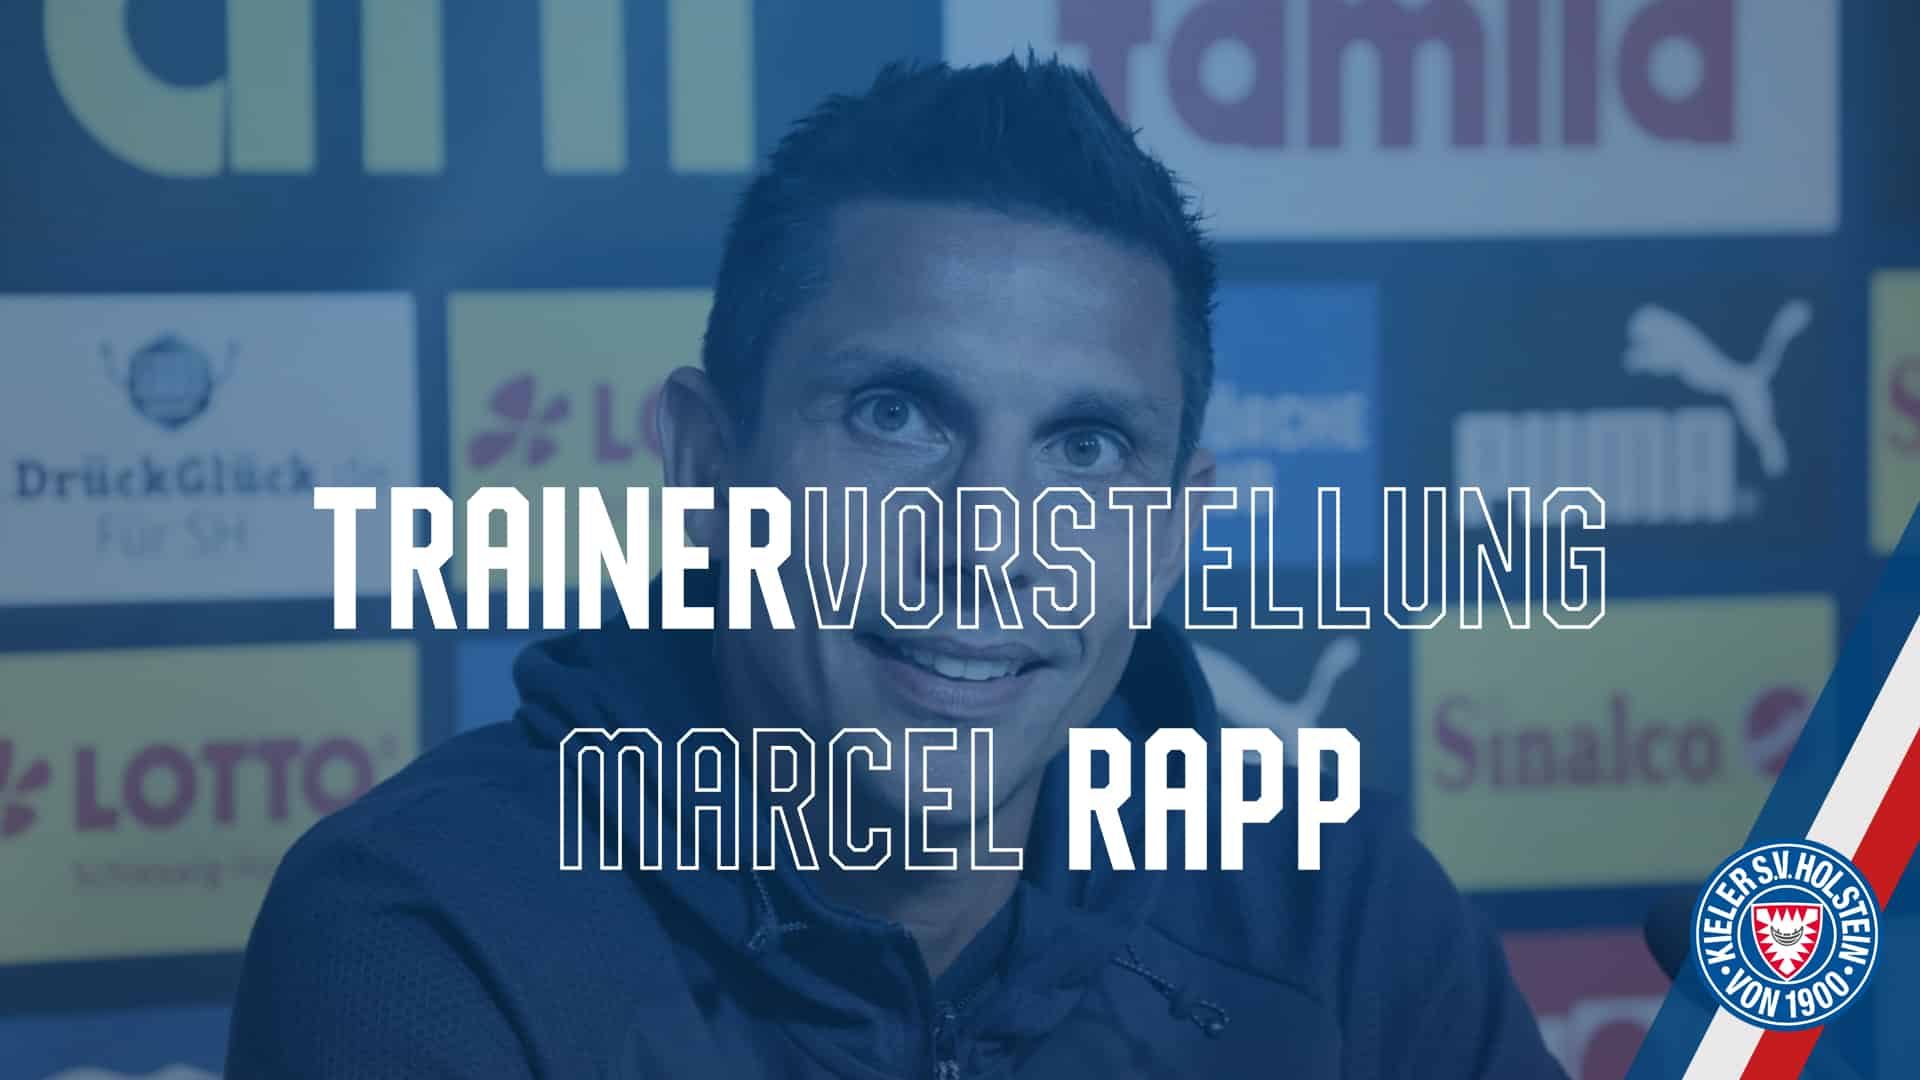 Marcel Rapp